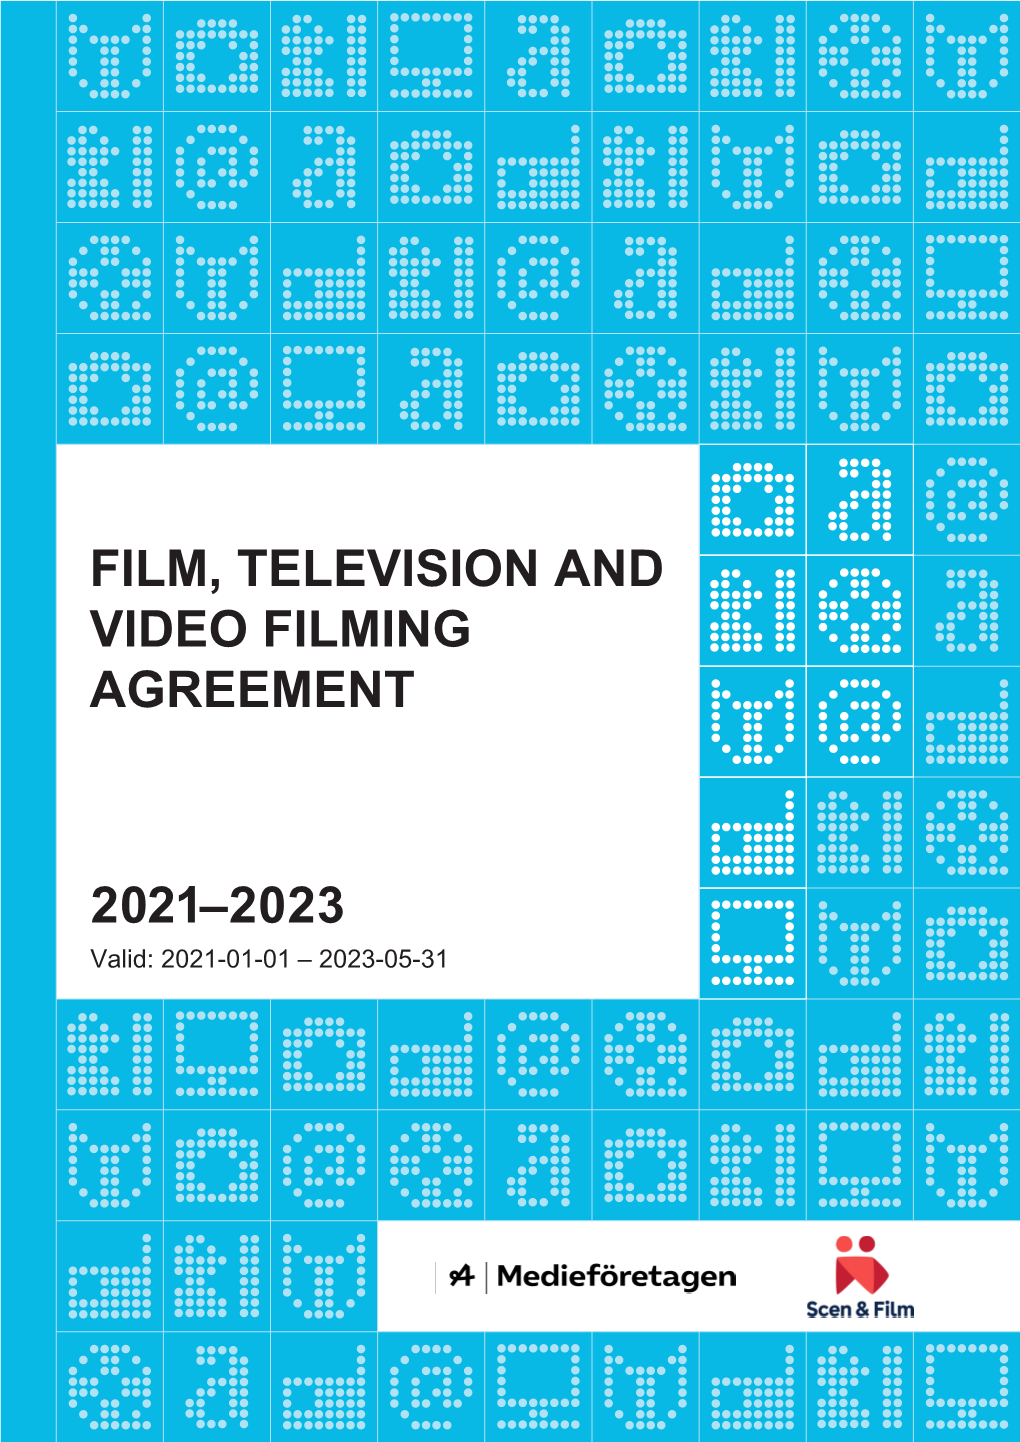 Kollektivavtal Film TV Video 2017-2020